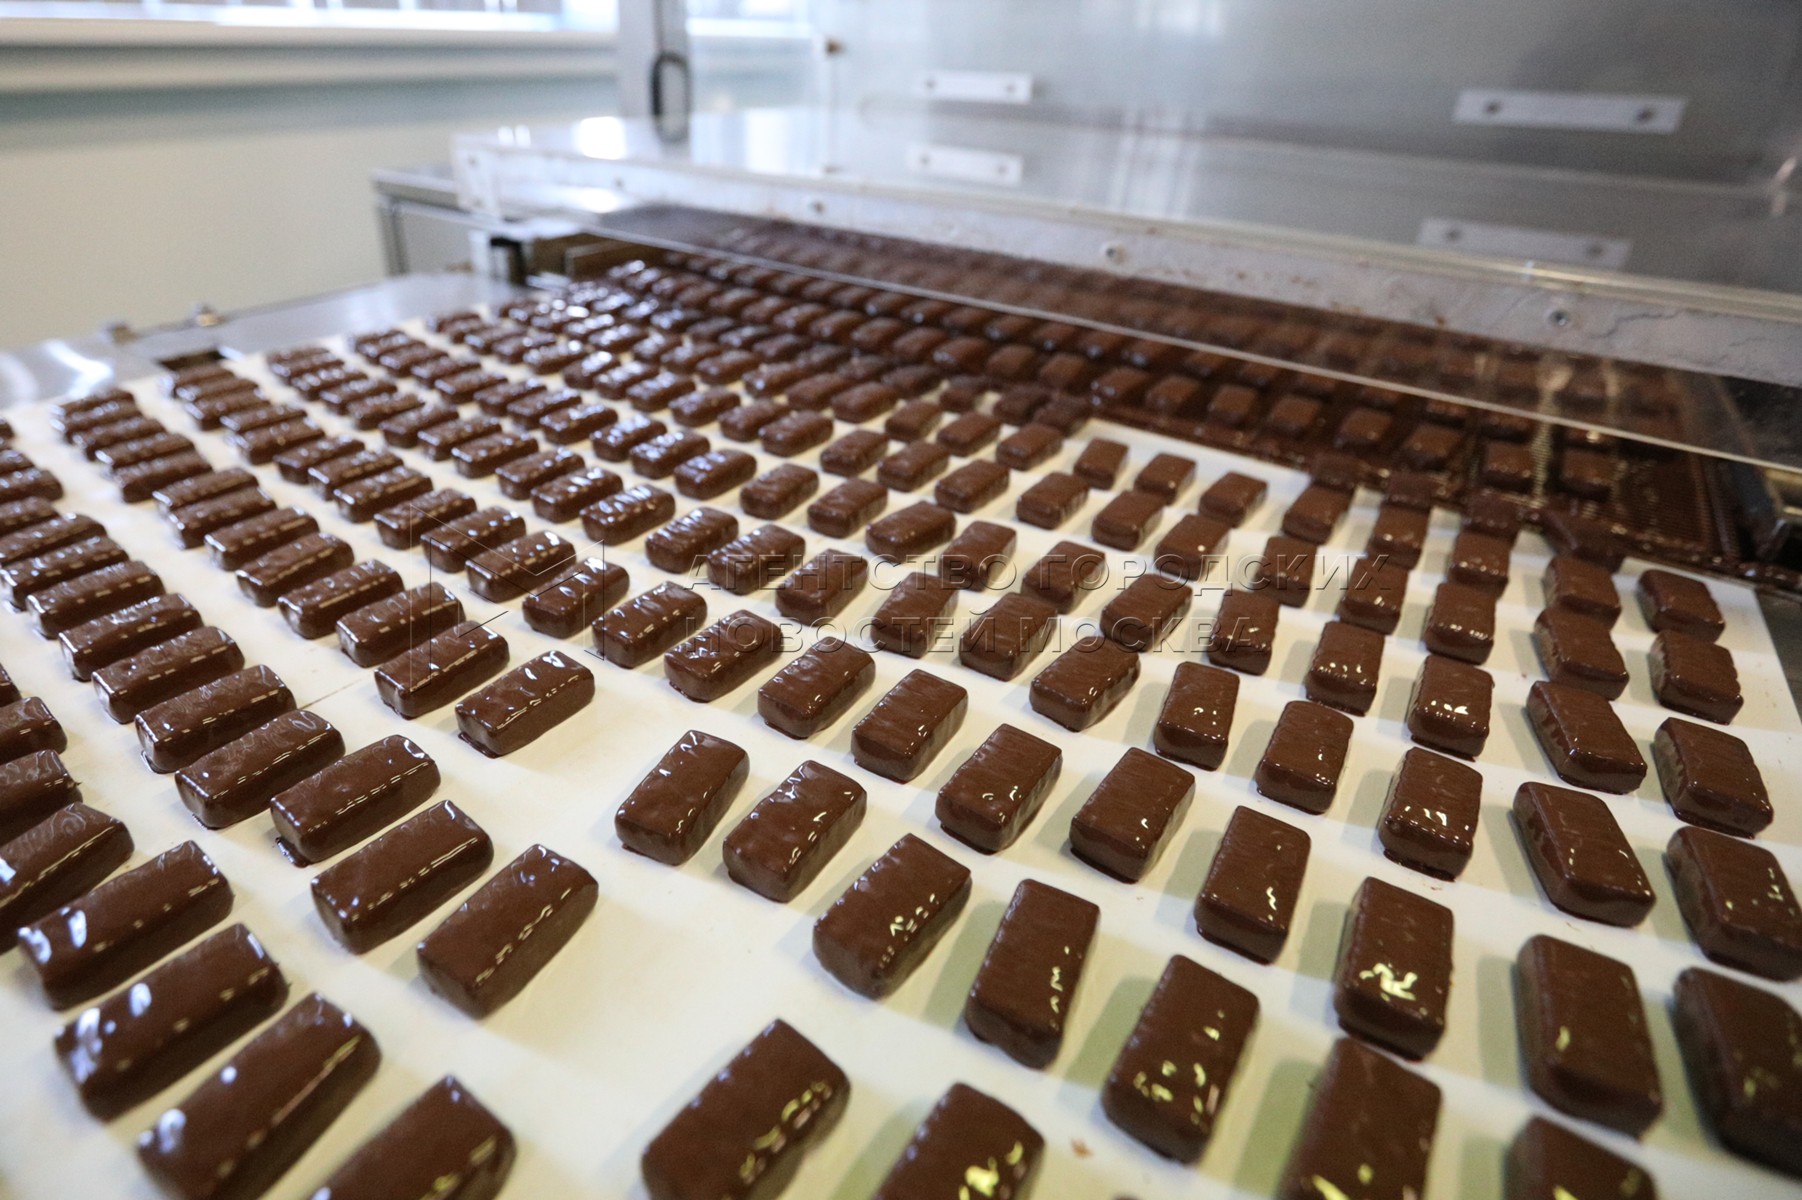 Егорьевск шоколадная фабрика. Производство шоколадных конфет. Фабрика шоколада Егорьевск. Конфеты из шоколада своими руками.